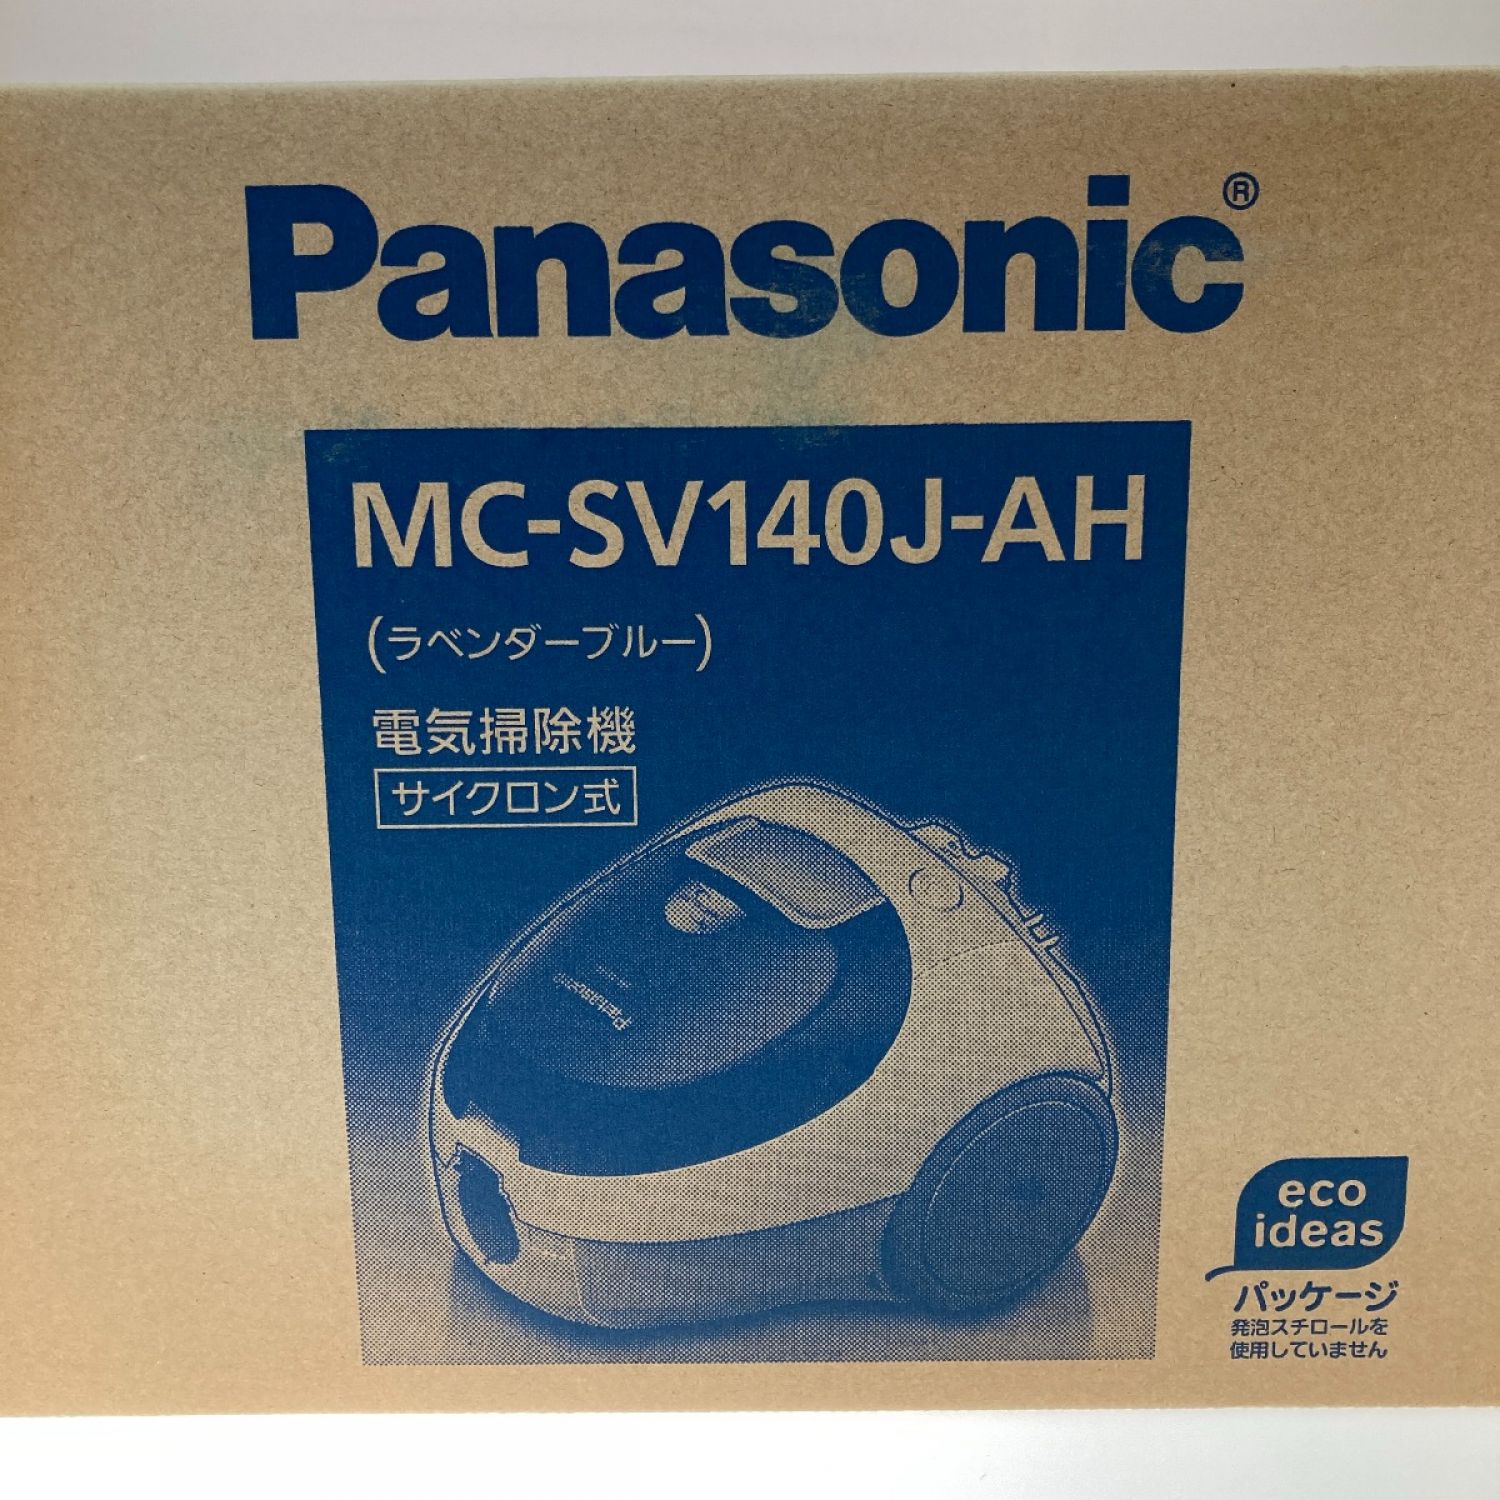 パナソニック サイクロン式電気掃除機 MC-SV140J-AH ラベンダーブルー 掃除機 注文割引